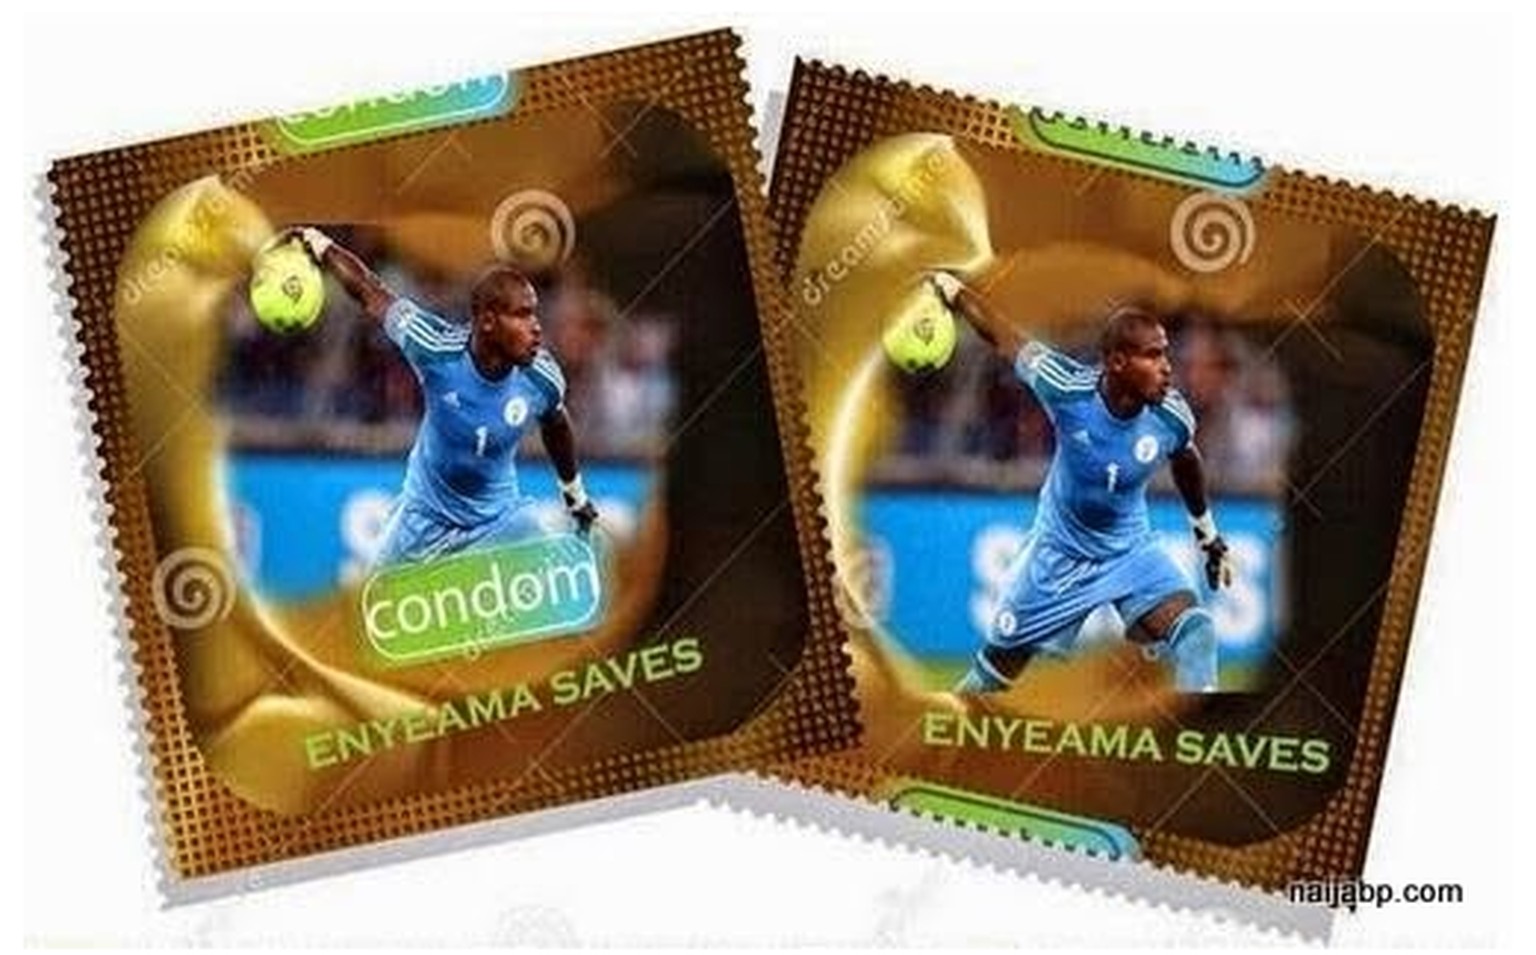 «Eneyama saves» – das sicherste Kondom aller Zeiten?